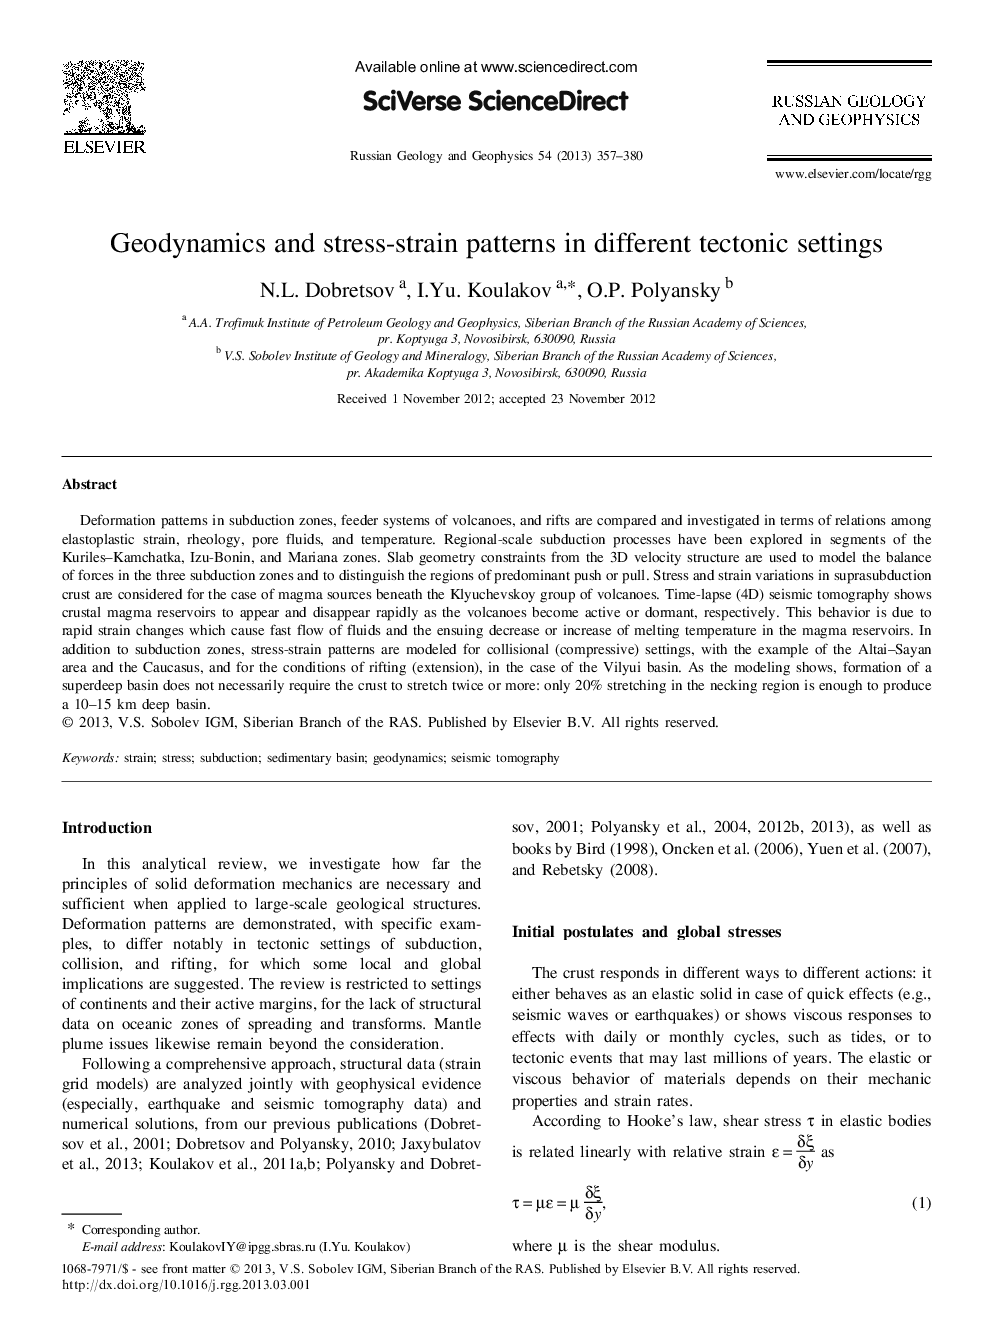 ژئودینامیک و الگوهای تنش در تنظیمات مختلف تکتونیکی 